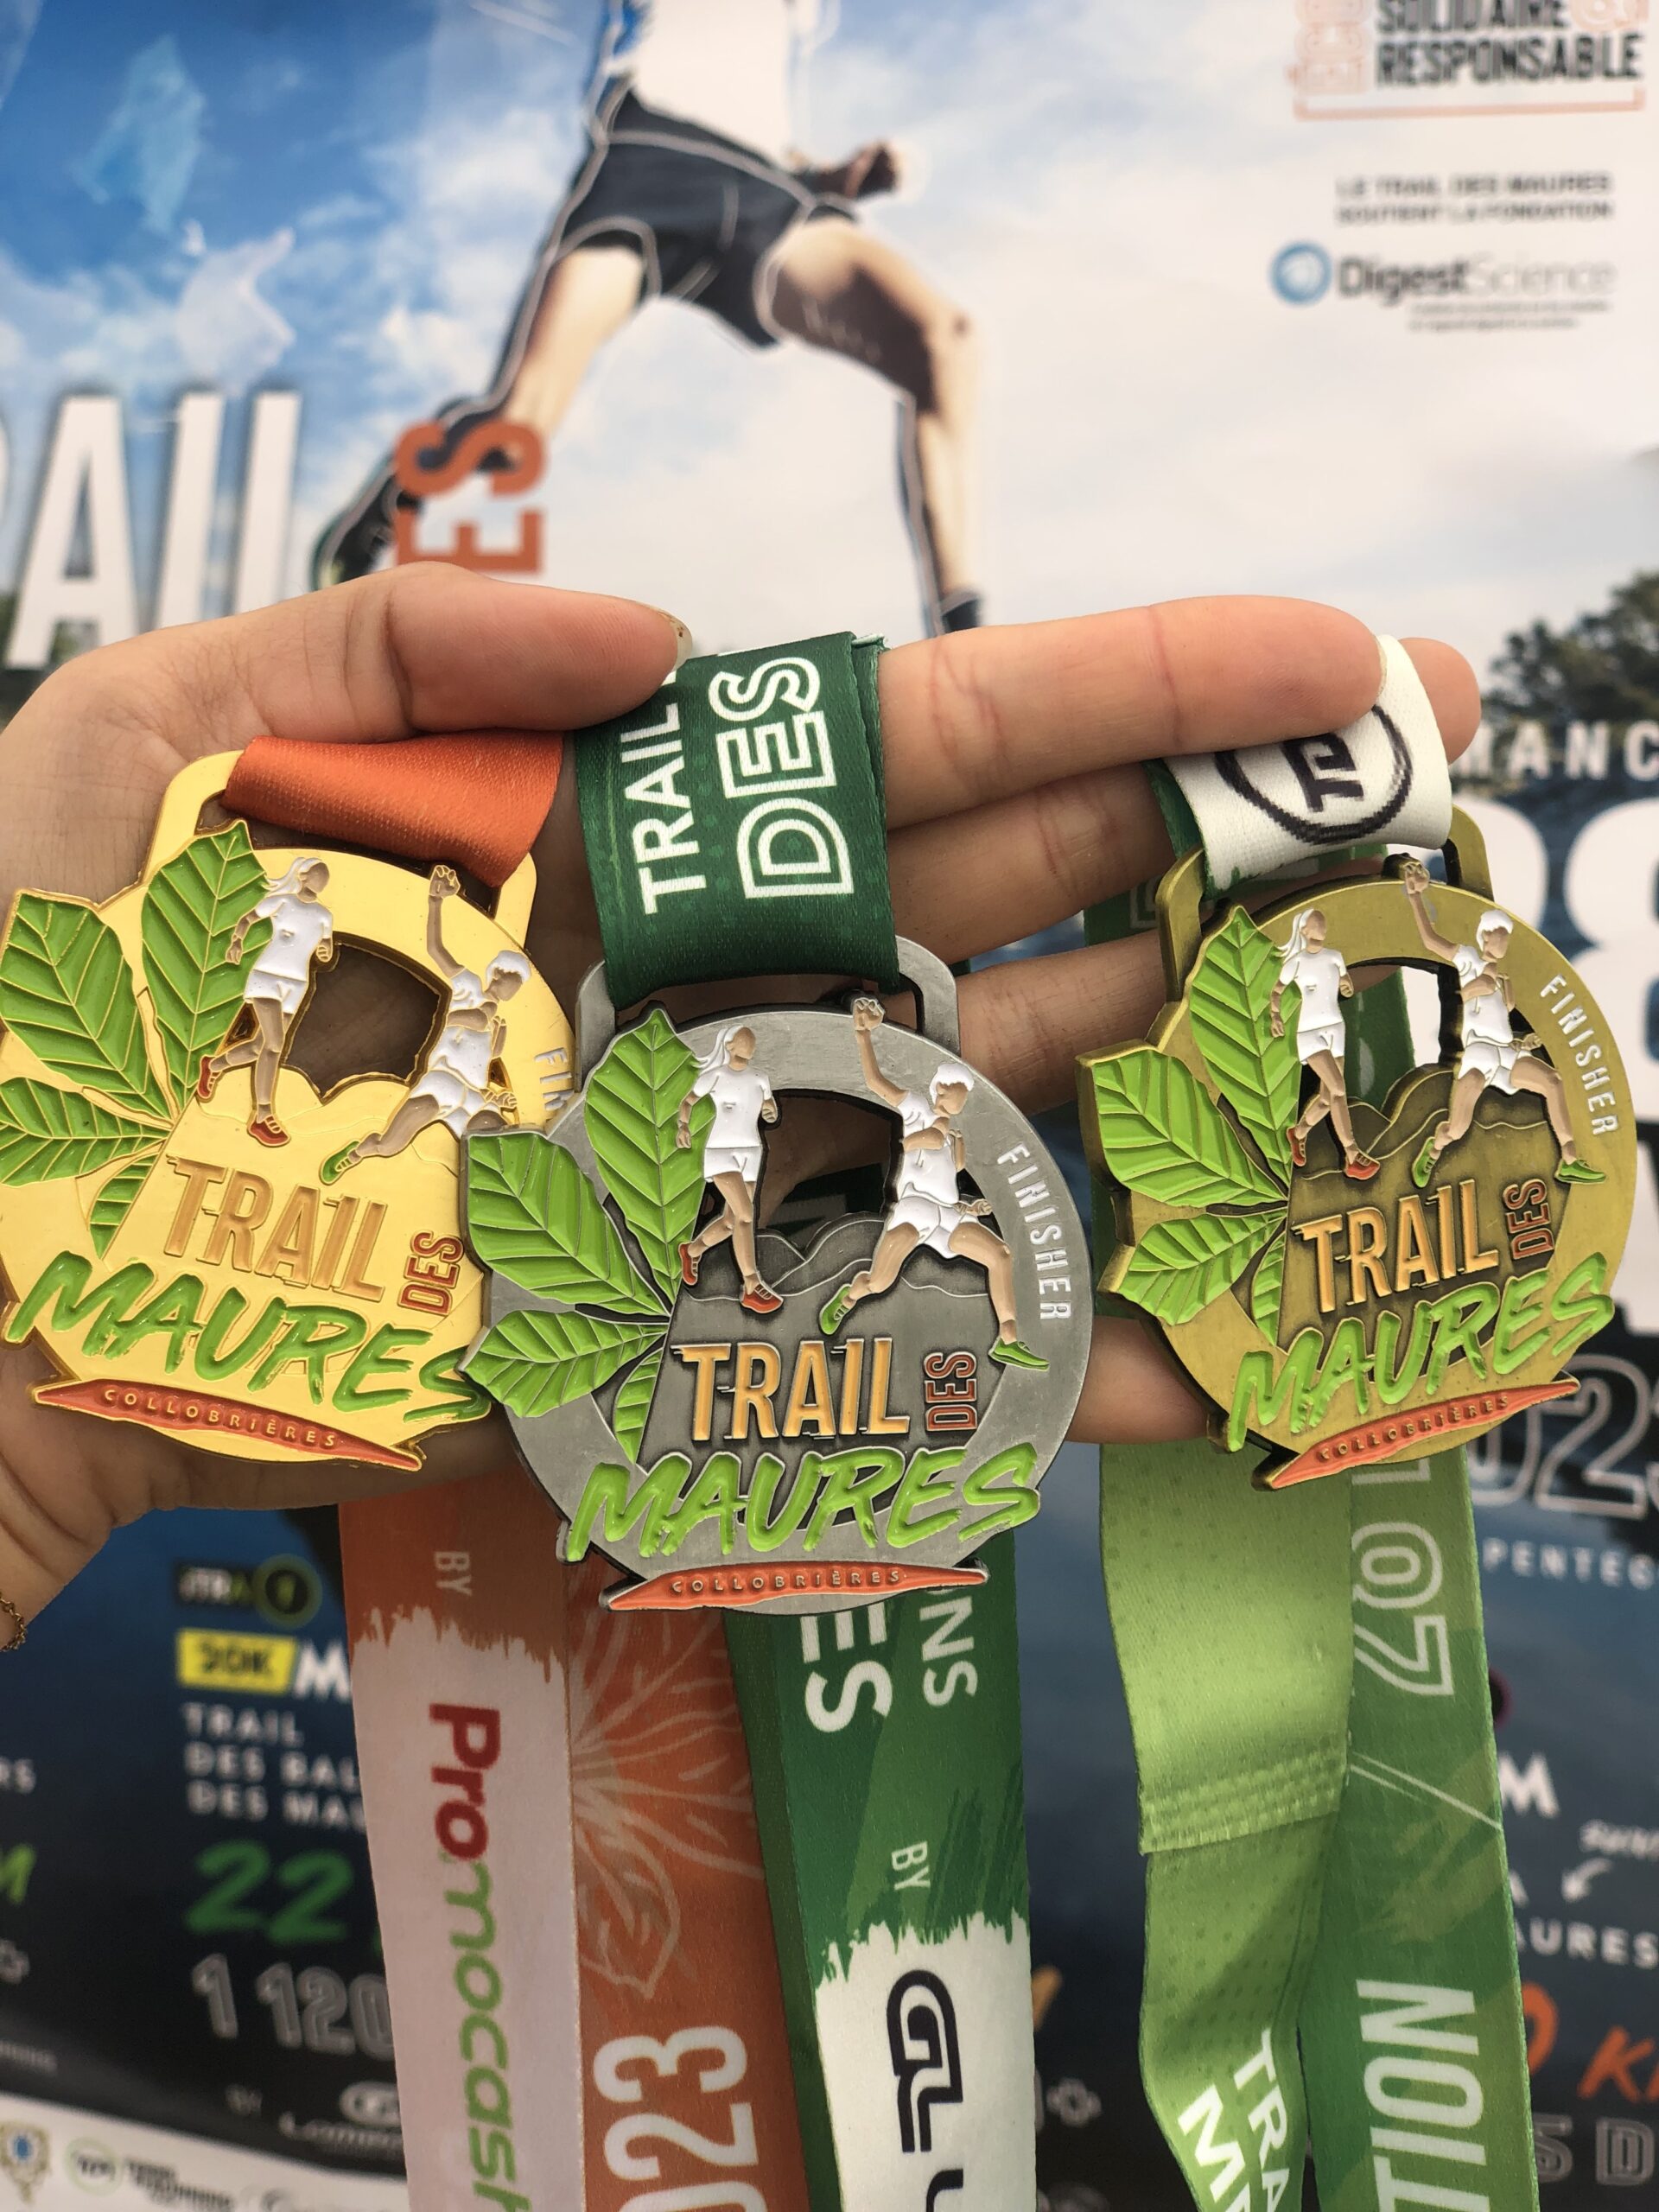 Trois médailles du Trail des Maures dans une main avec en fond l'affiche du Trail des Maures